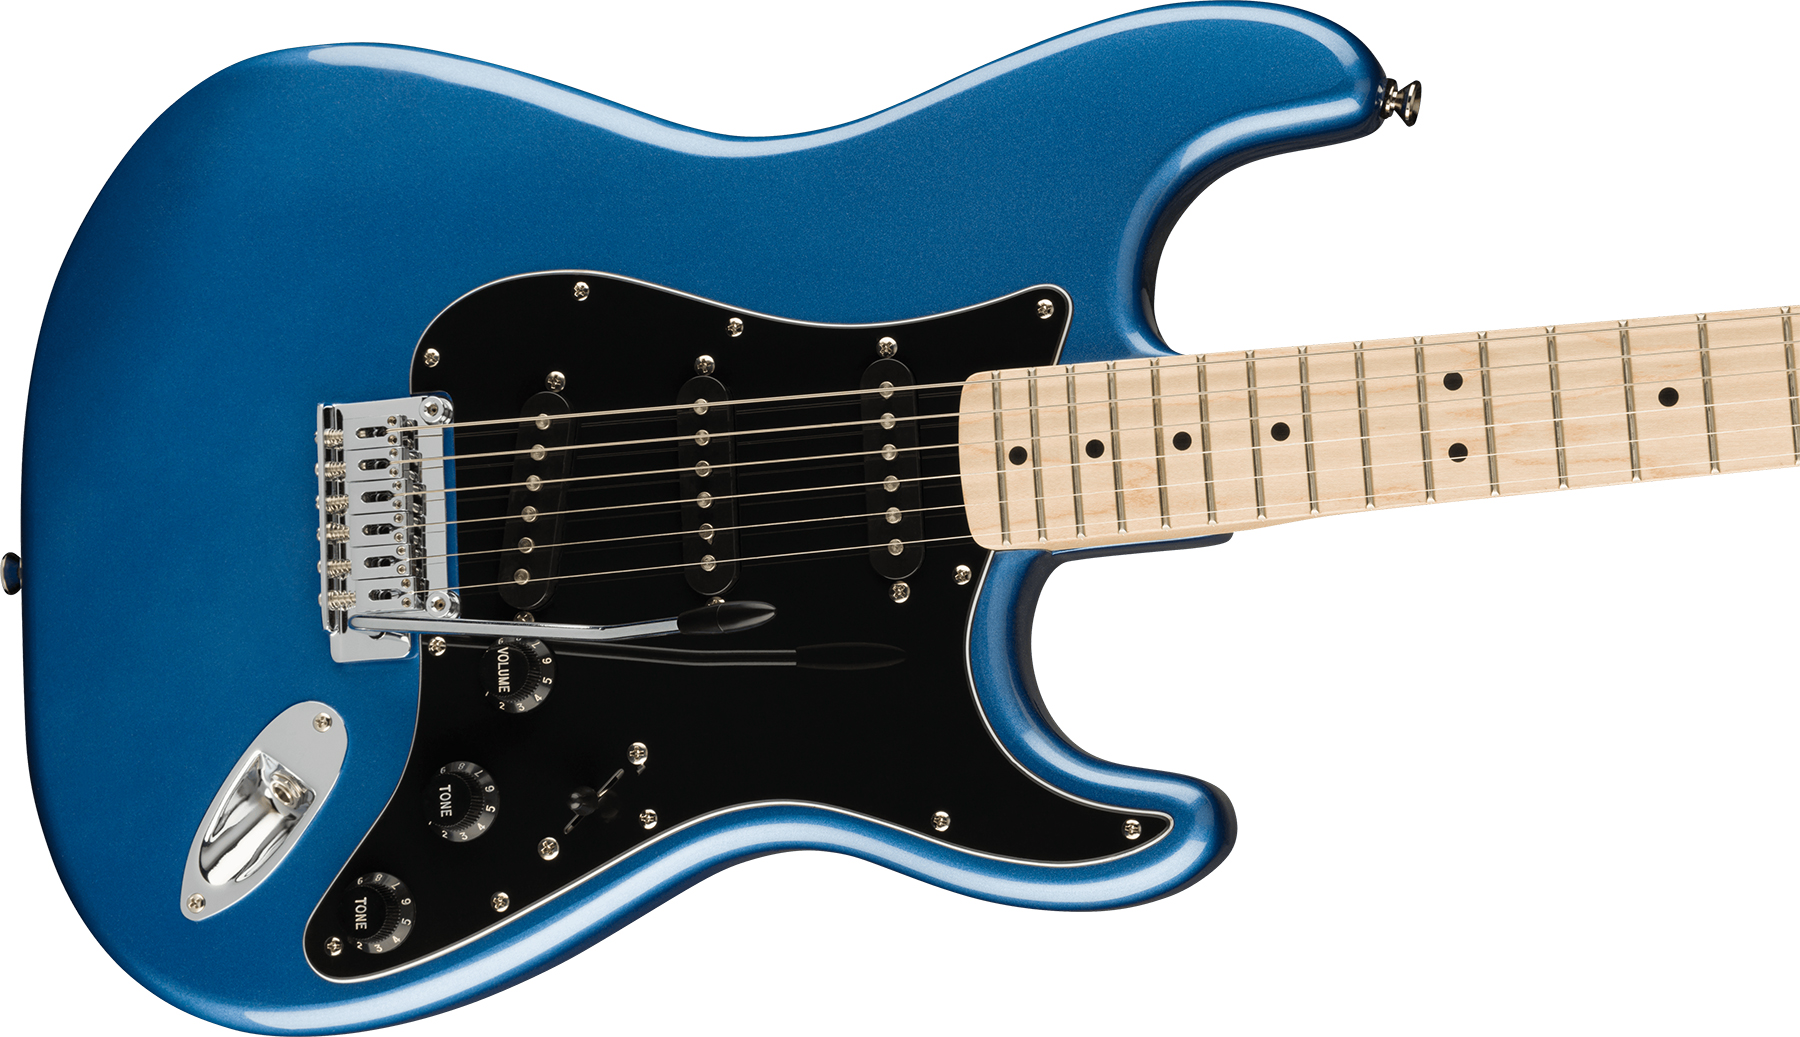 Squier Strat Affinity 2021 Sss Trem Mn - Lake Placid Blue - Str shape electric guitar - Variation 2